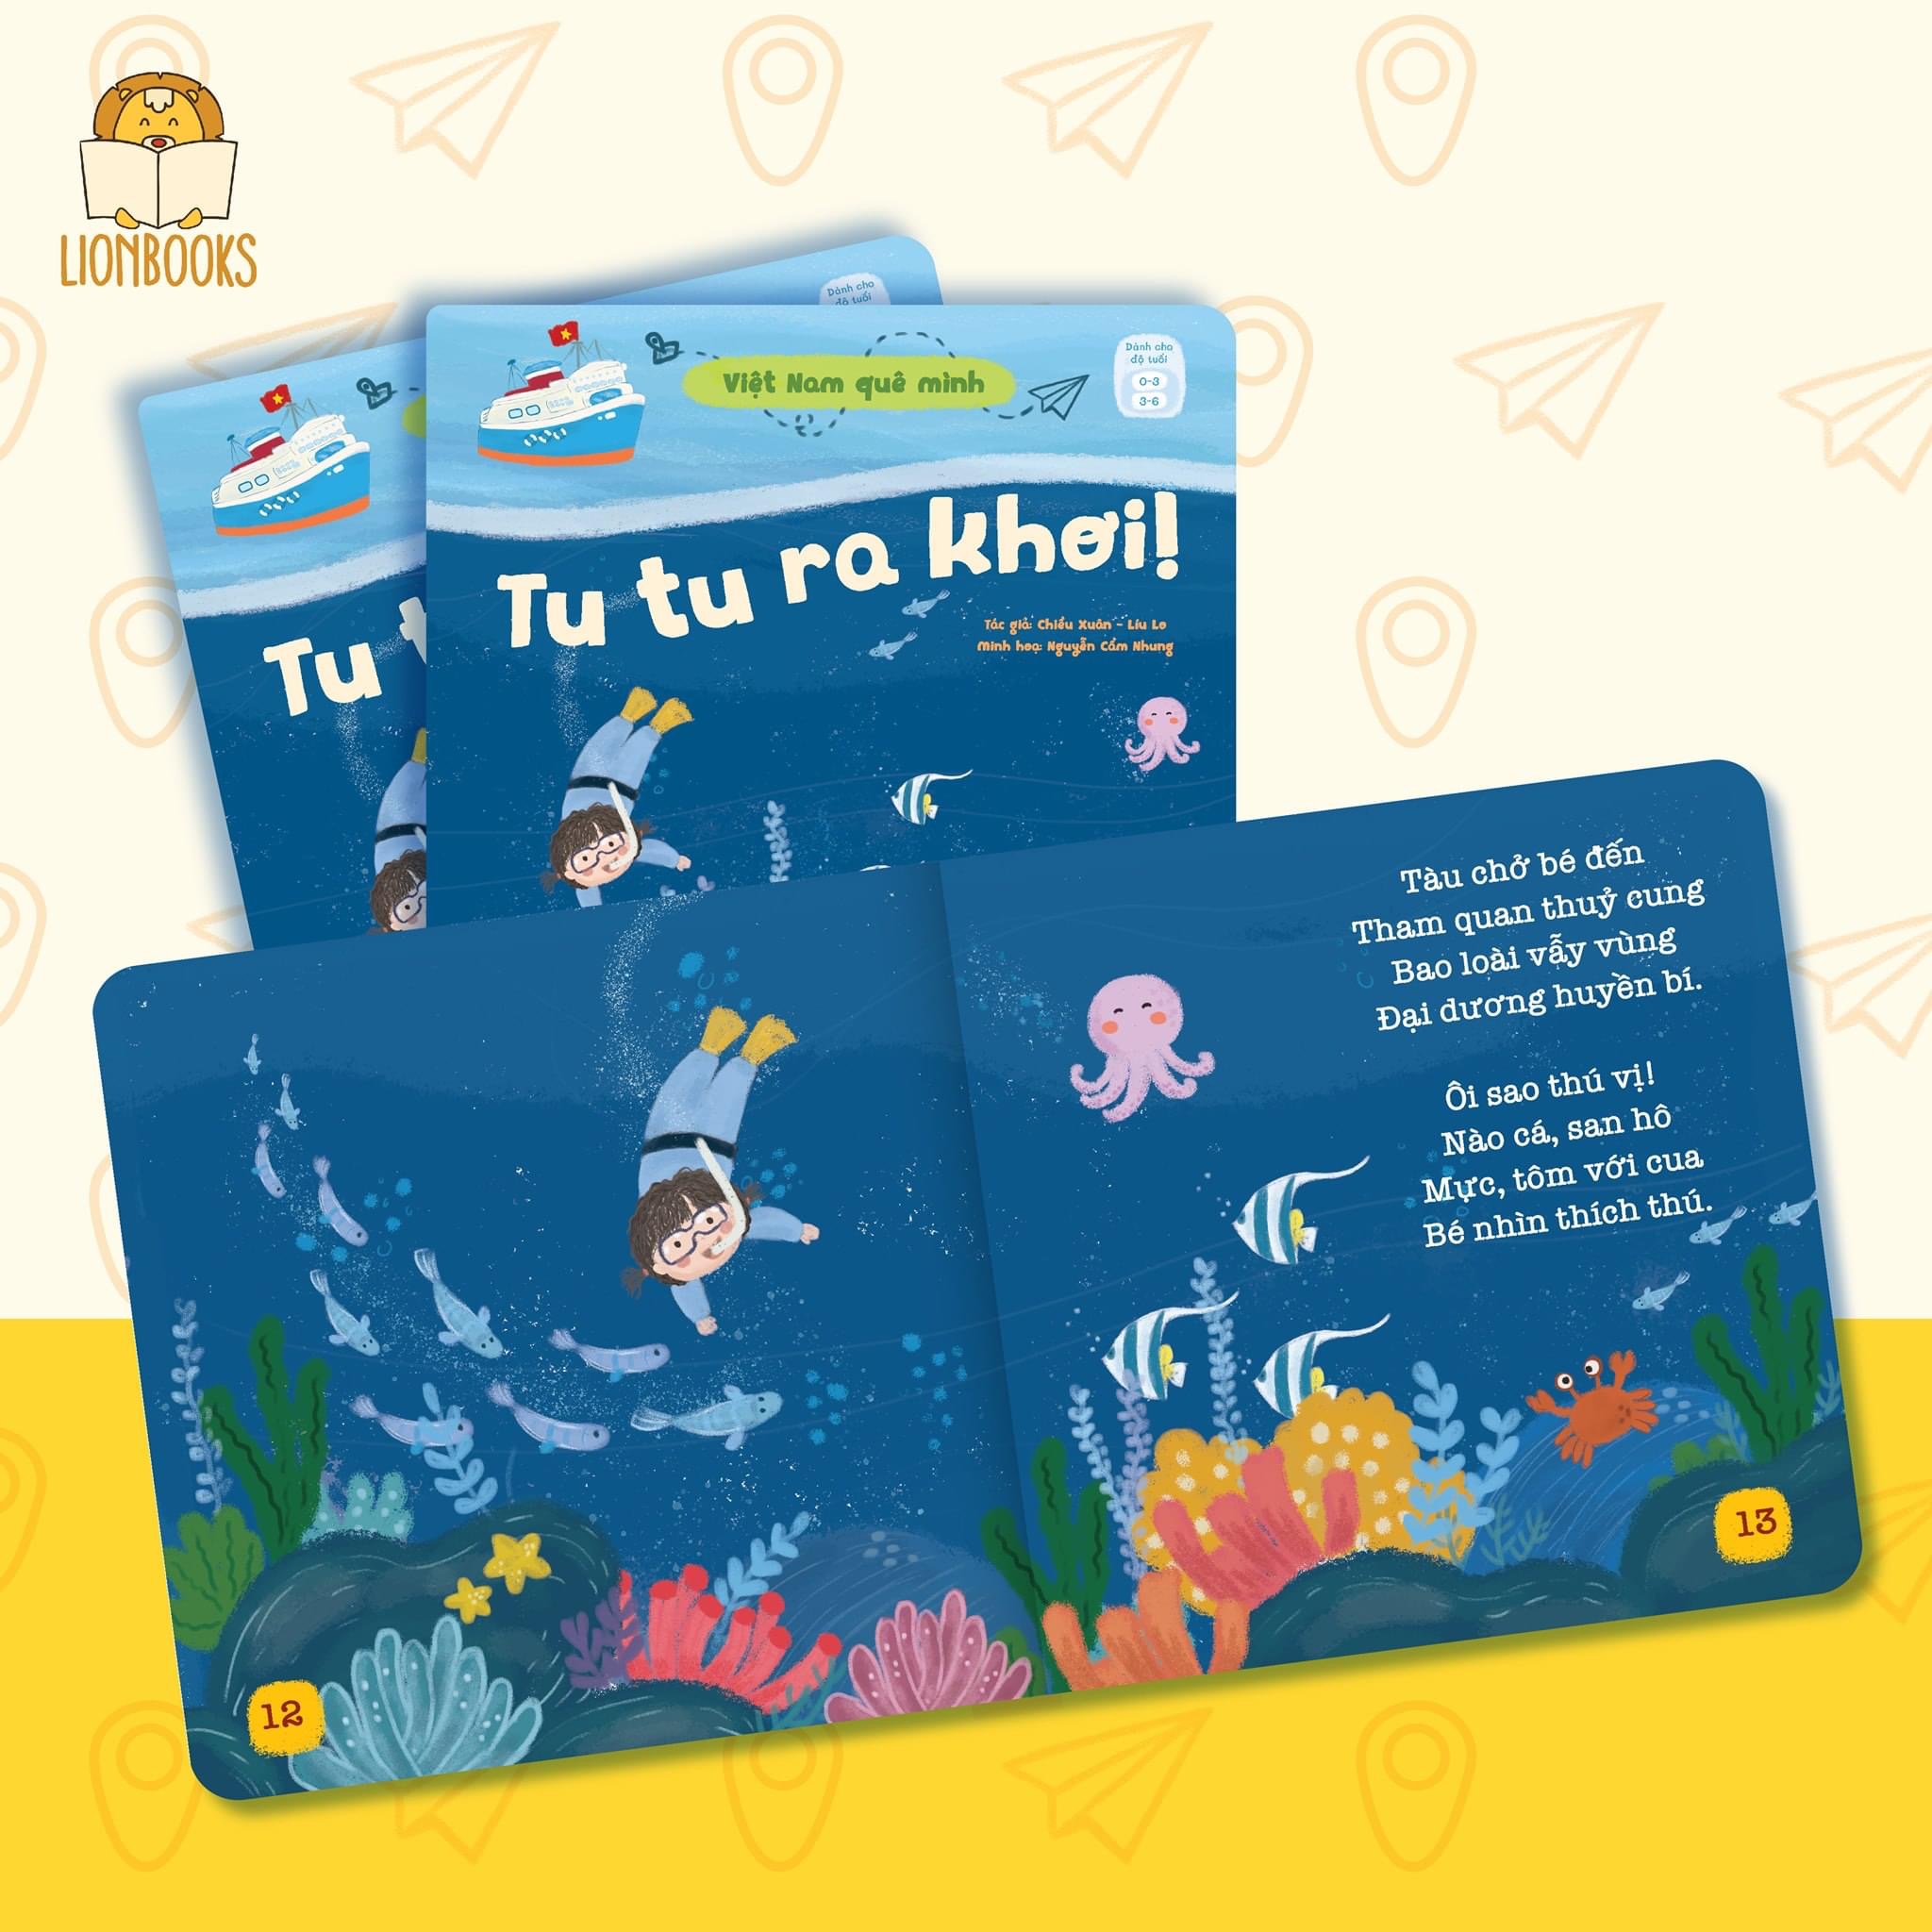 Sách thơ cho bé - Bộ 03 cuốn Việt Nam Quê Mình - Dành cho bé 0-3 tuổi - Lionbooks